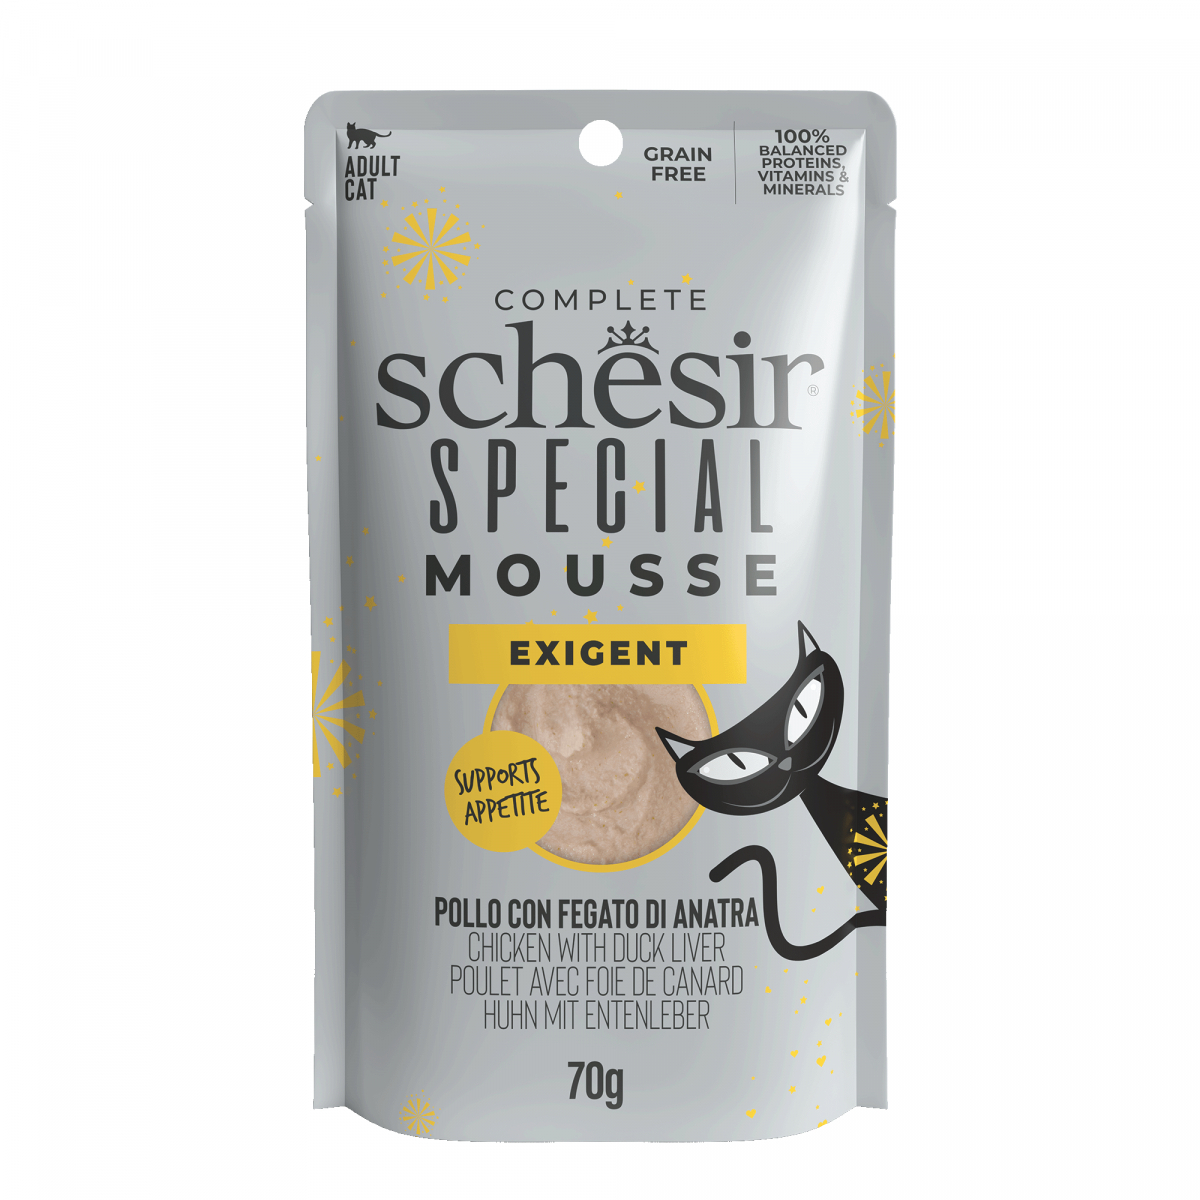 Schesir Special Need Mousse Exigent pour chat - Poulet/Foie de canard